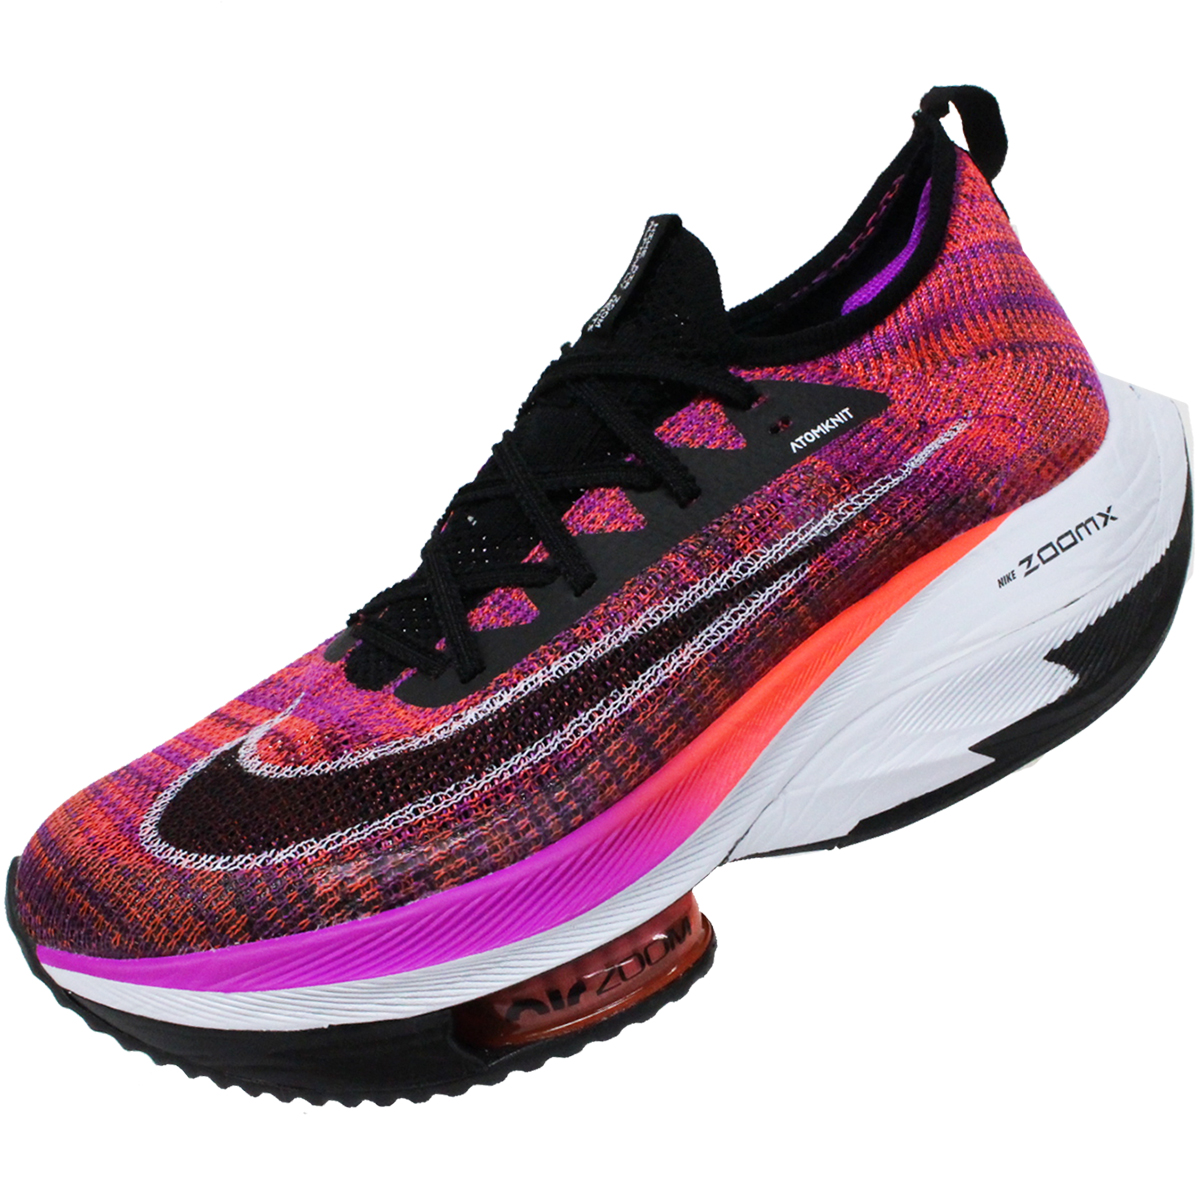 43964円 新規購入 ナイキ メンズ ランニング スポーツ Nike Men's Air Zoom Alphafly Next% Running Shoes Purple Red